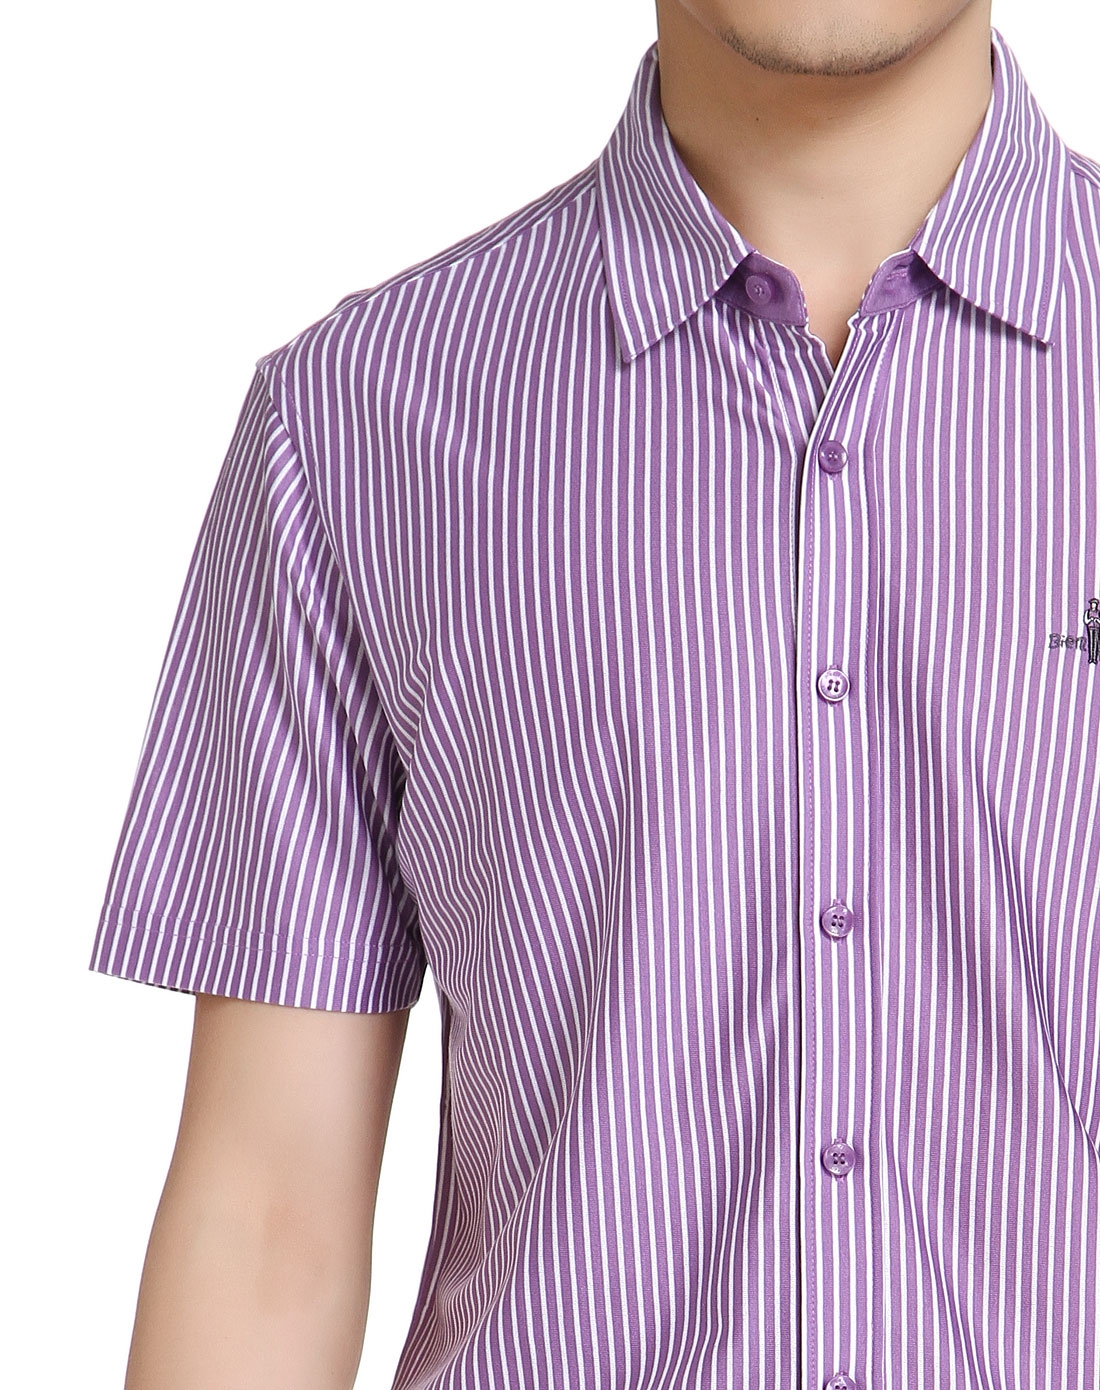 纯棉亲肤竖条纹男款浅紫色短袖衬衫